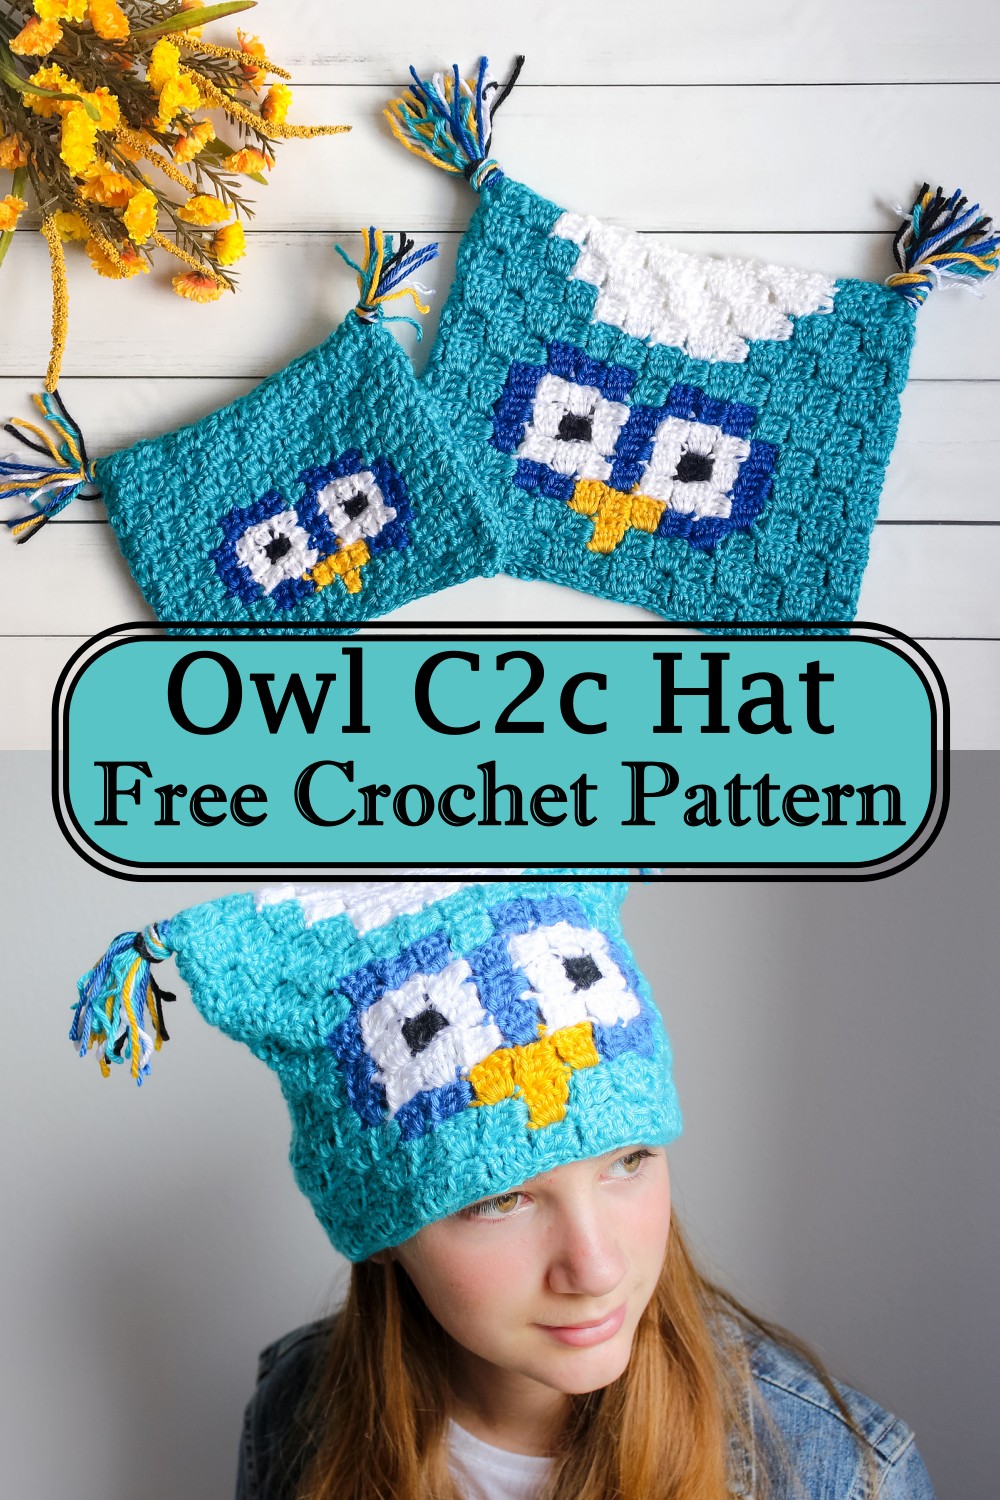 Owl C2c Hat